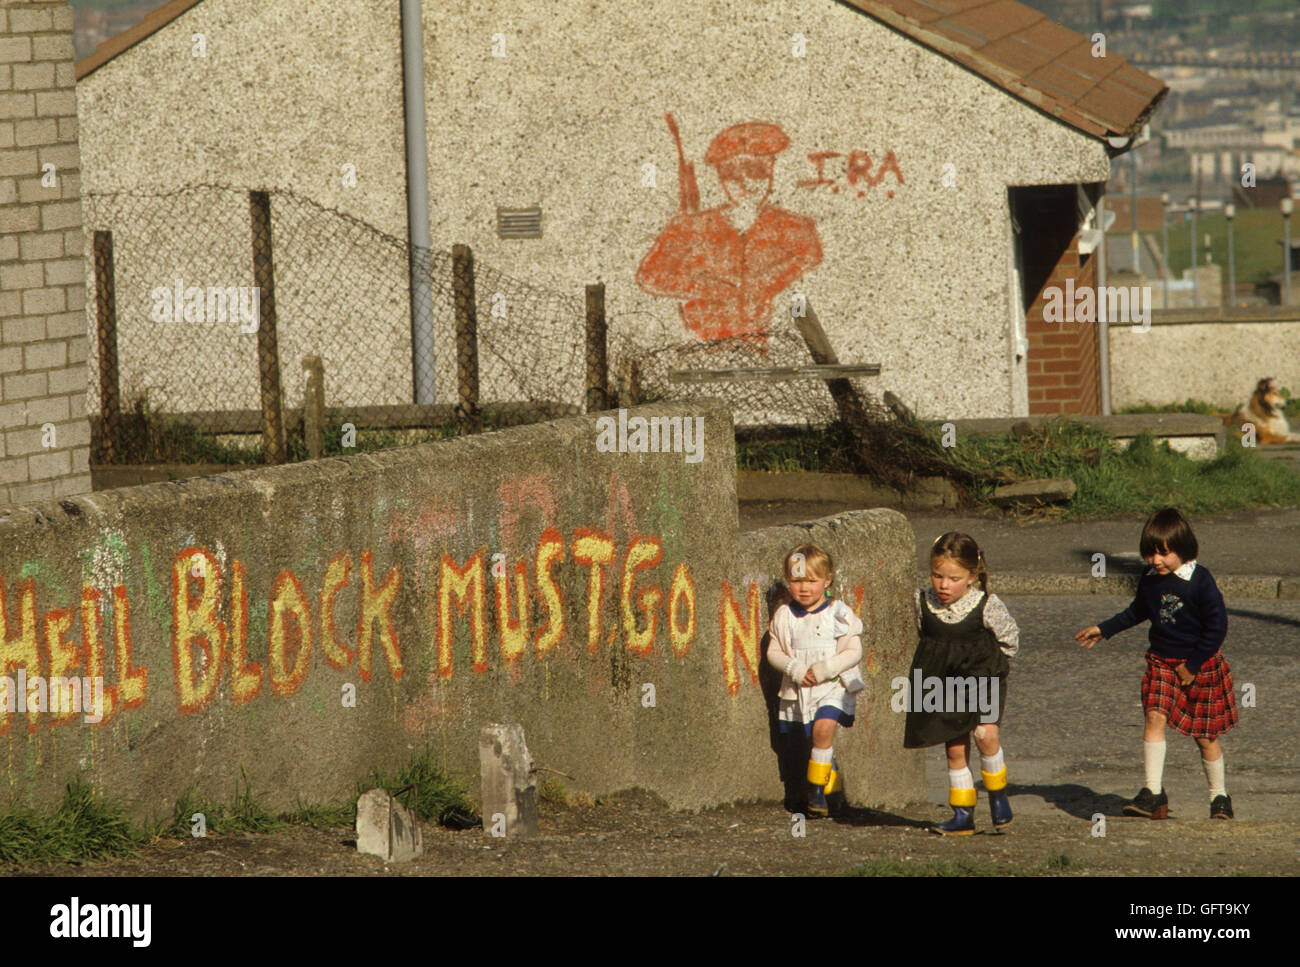 Les troubles des années 80, banlieue de Belfast IRA 'graffiti enfer Bloc doit aller maintenant' 1981 HOMER SYKES Banque D'Images